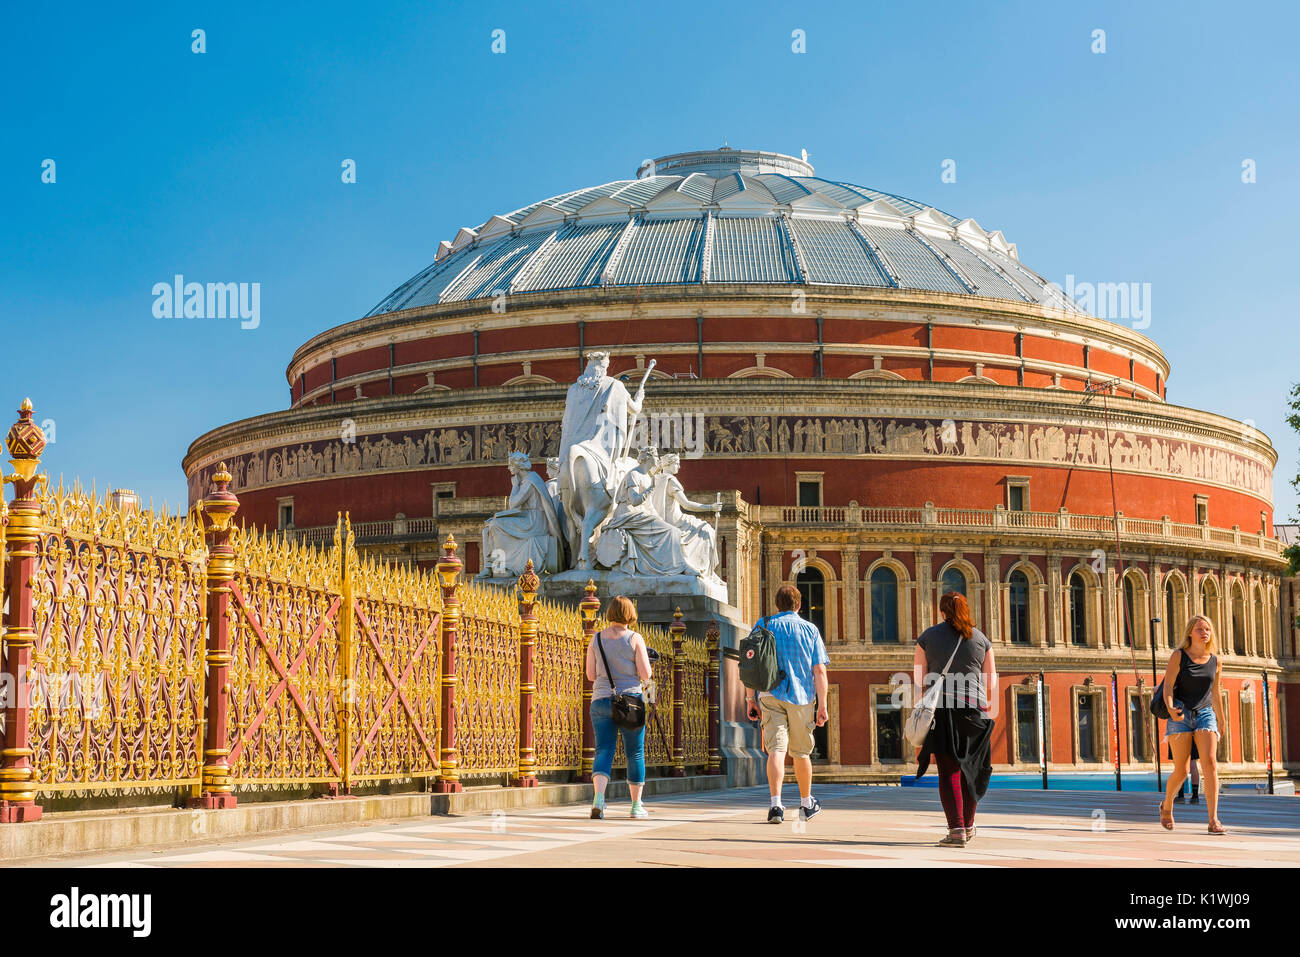 Touristen London UK, Blick auf einen Sommernachmittag von Touristen in Kensington Gardens zu Fuß in Richtung der Royal Albert Hall, London, England, Großbritannien. Stockfoto